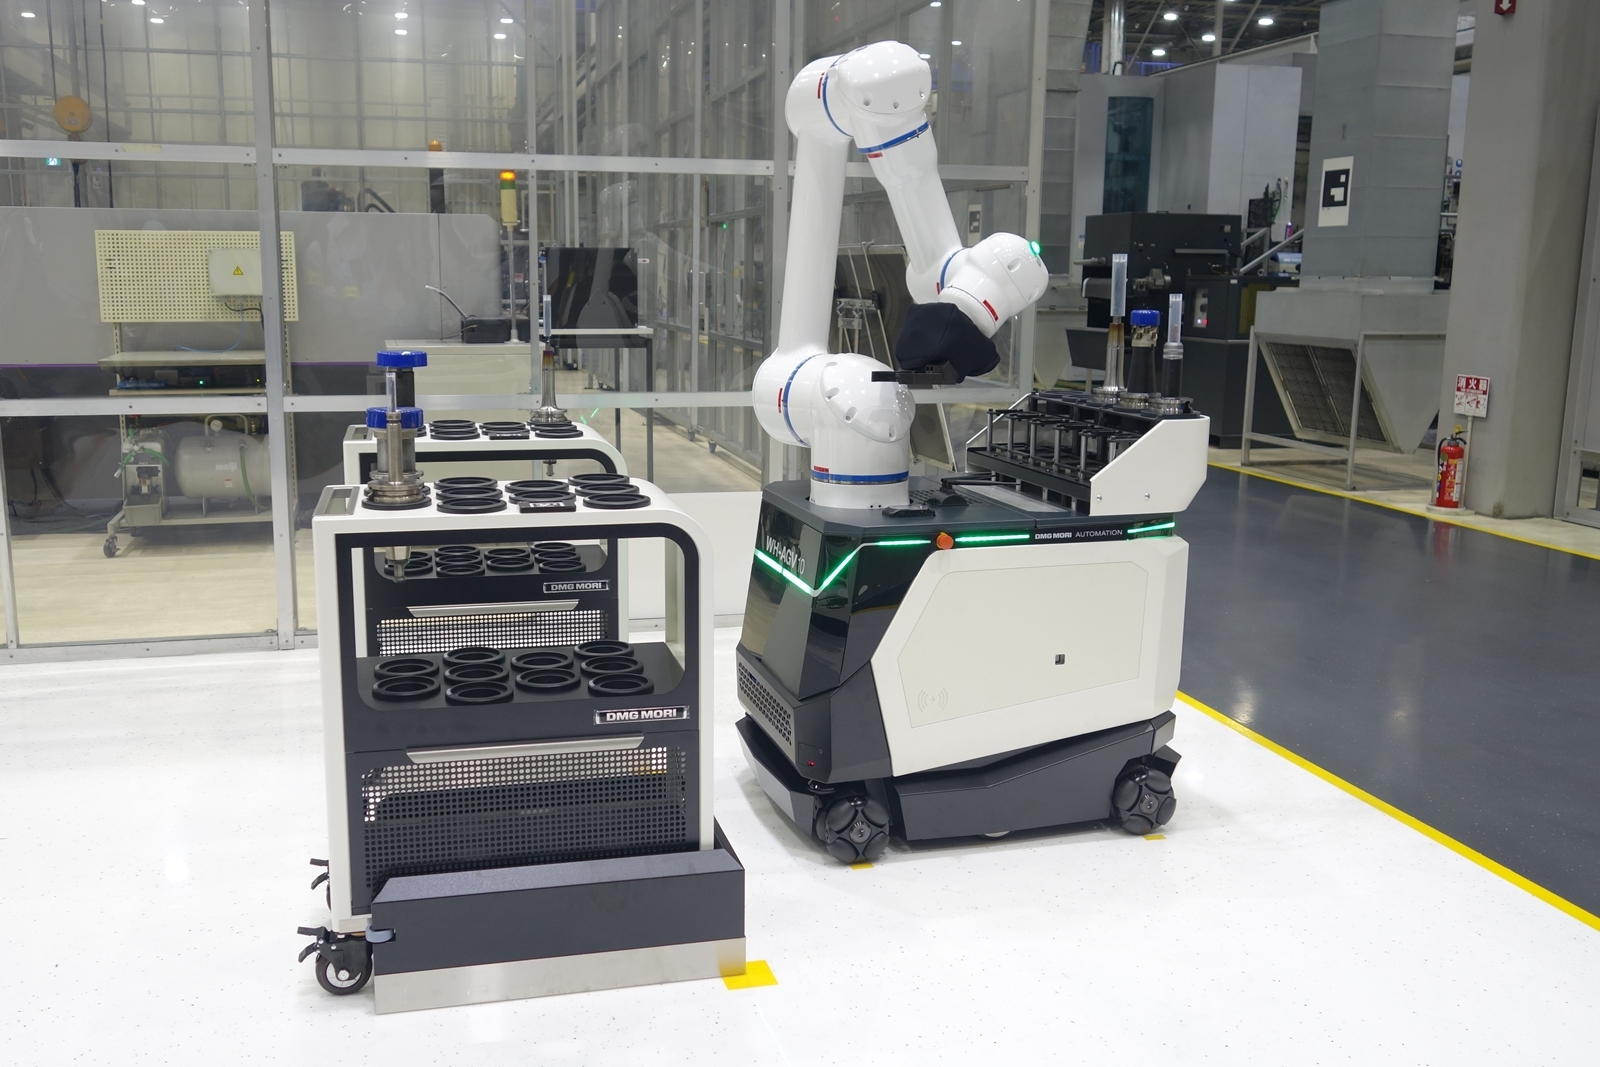 協働ロボットを搭載したAGV「WH-AGV5」 工場内でのワークや工具の搬送といった利用を想定している。（出所：日経クロステック）